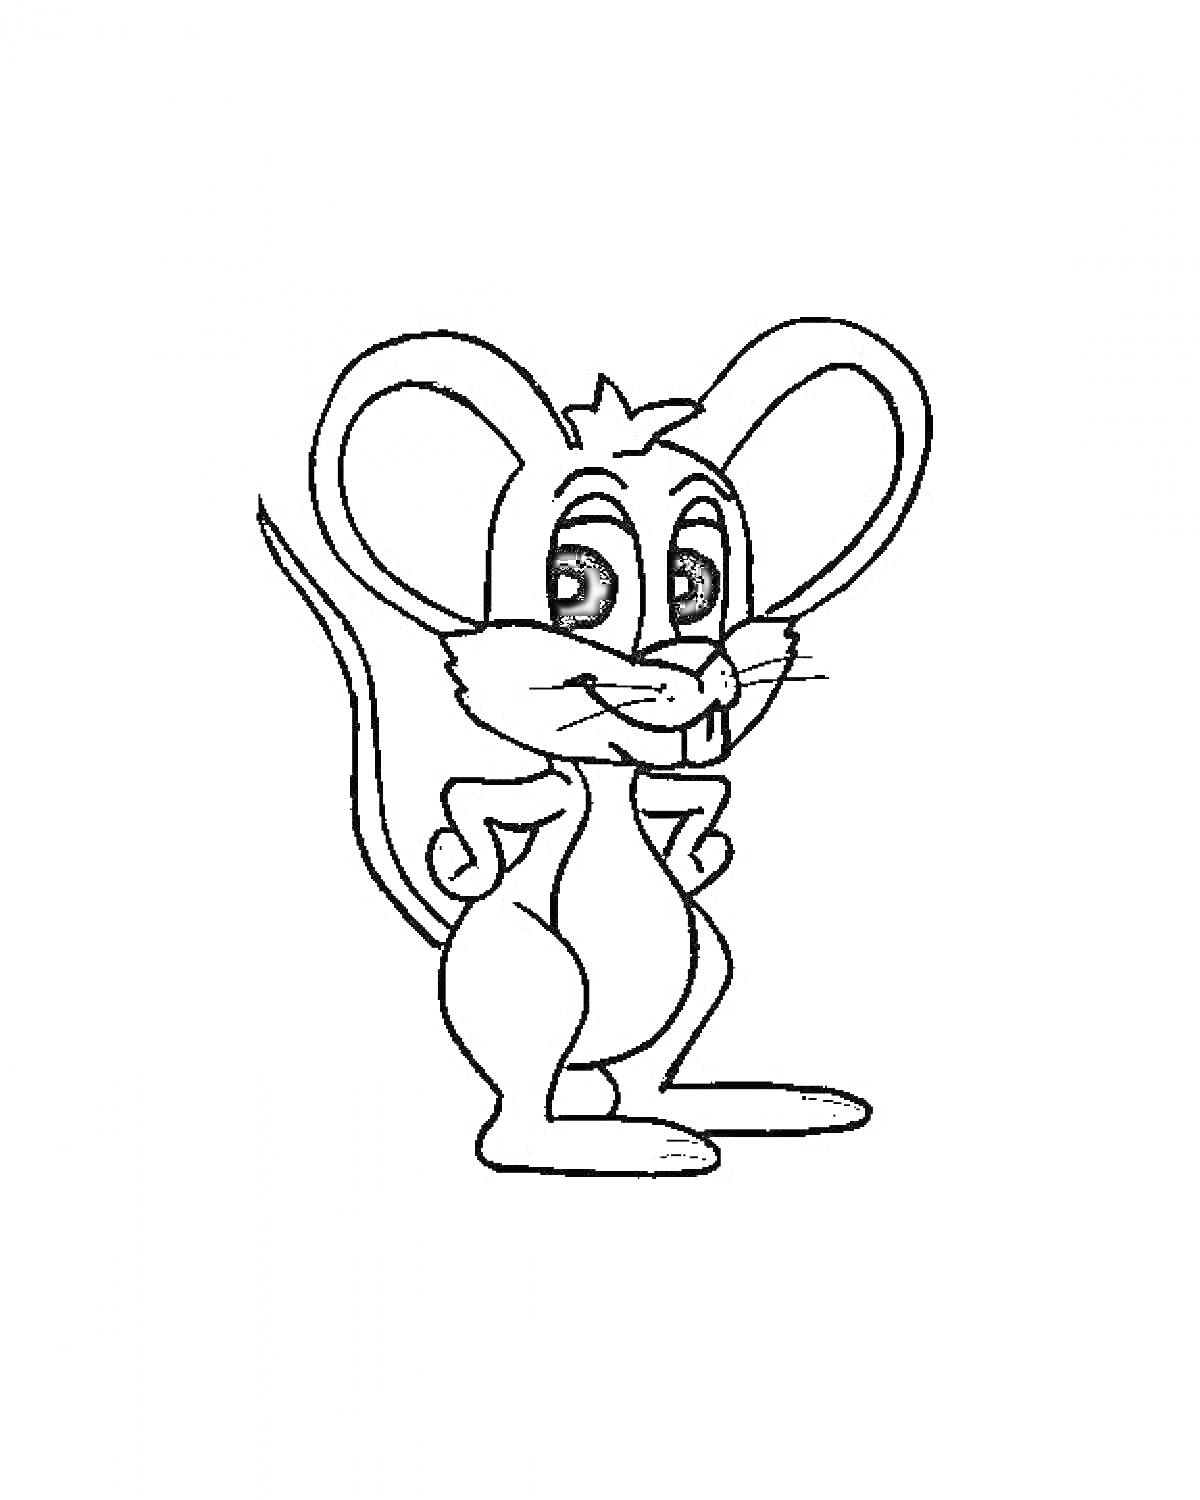 Раскраска Мышка с большими ушами, стоящая на задних лапках